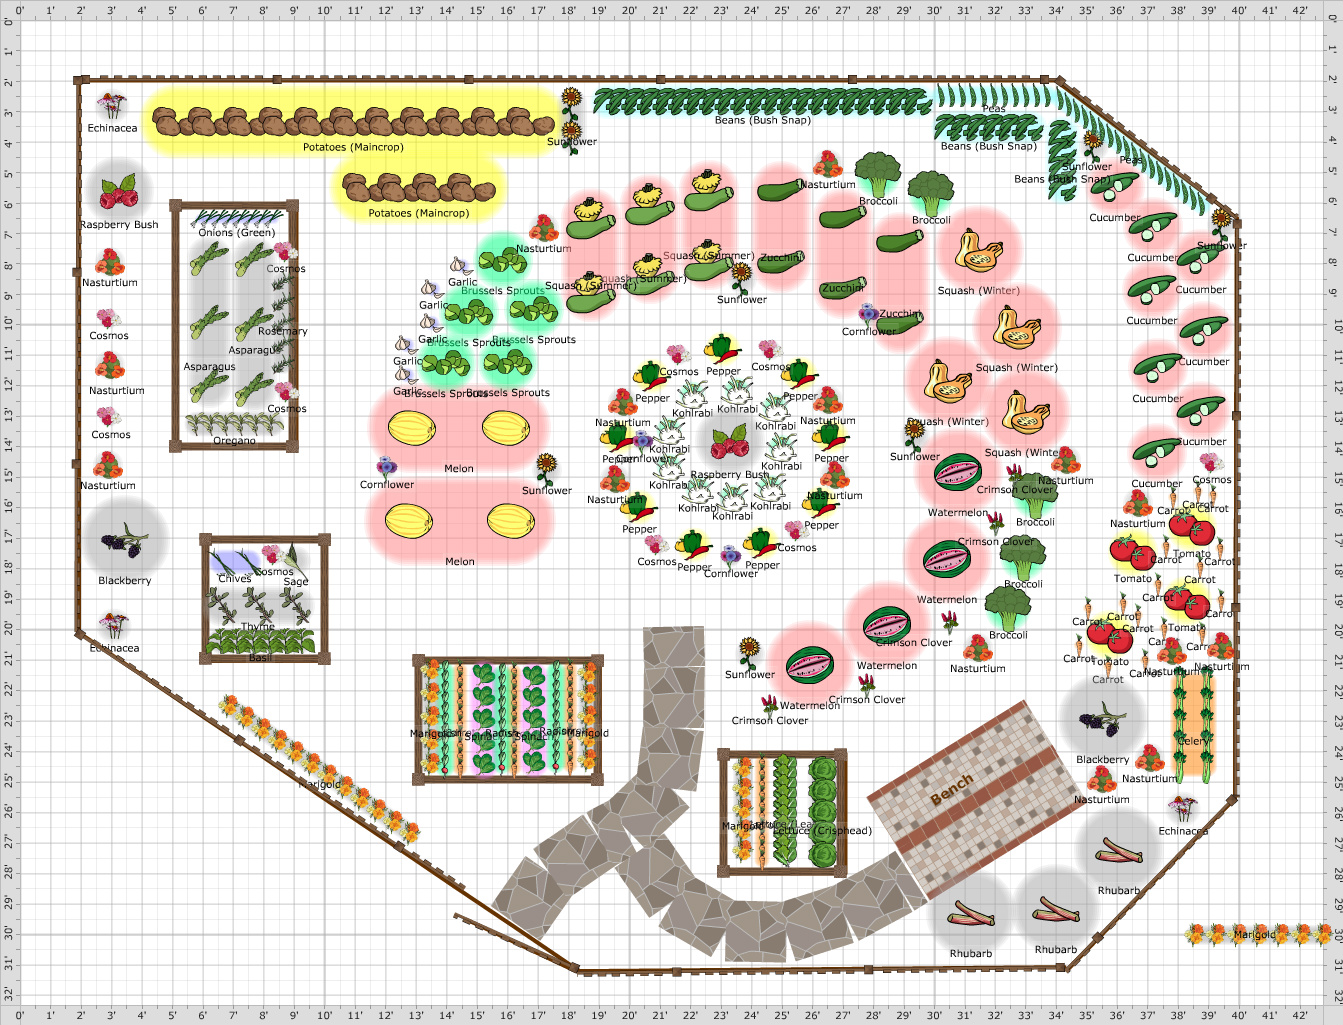 Vegetable Garden Layout Planning